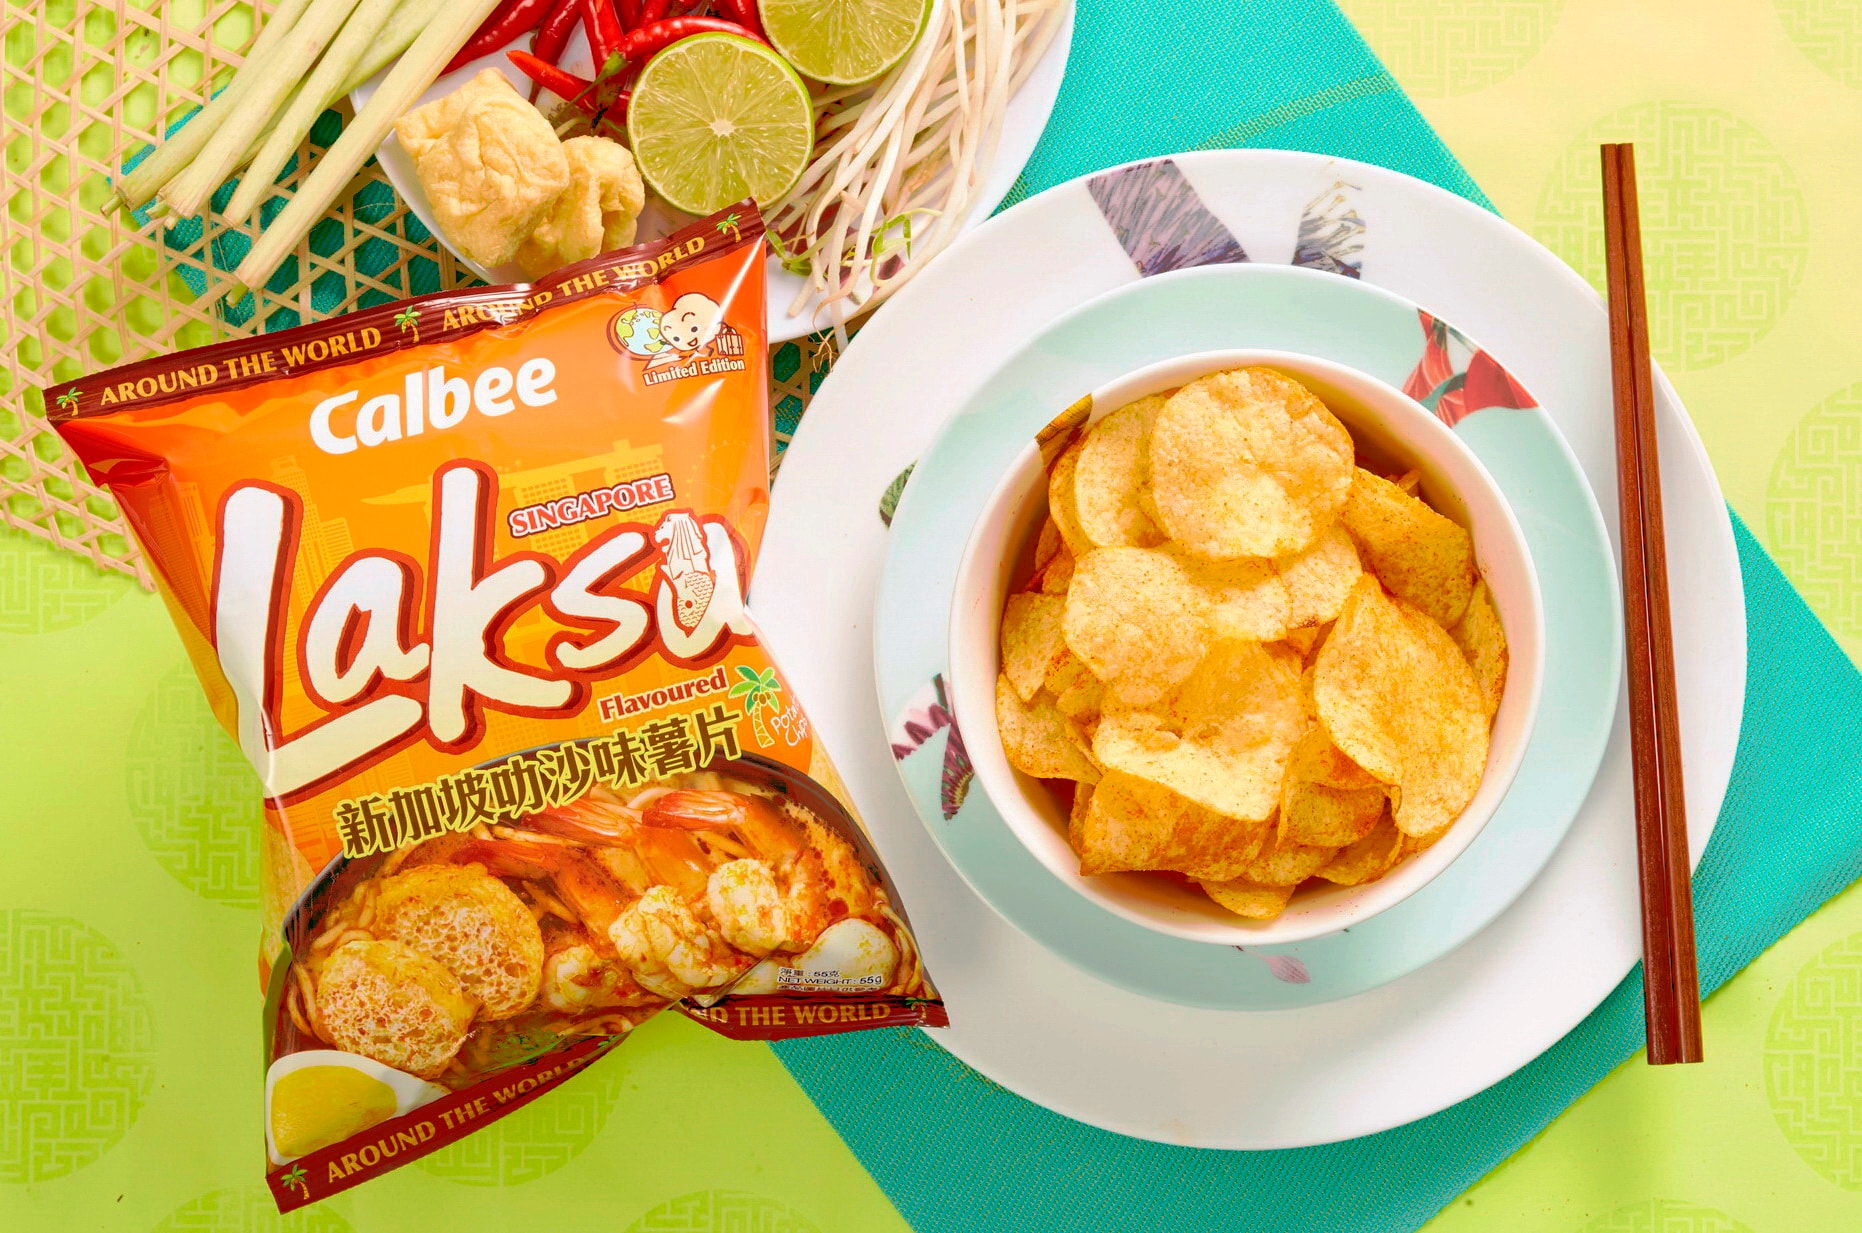 Calbee 推出全新期間限定「新加坡叻沙味」薯片